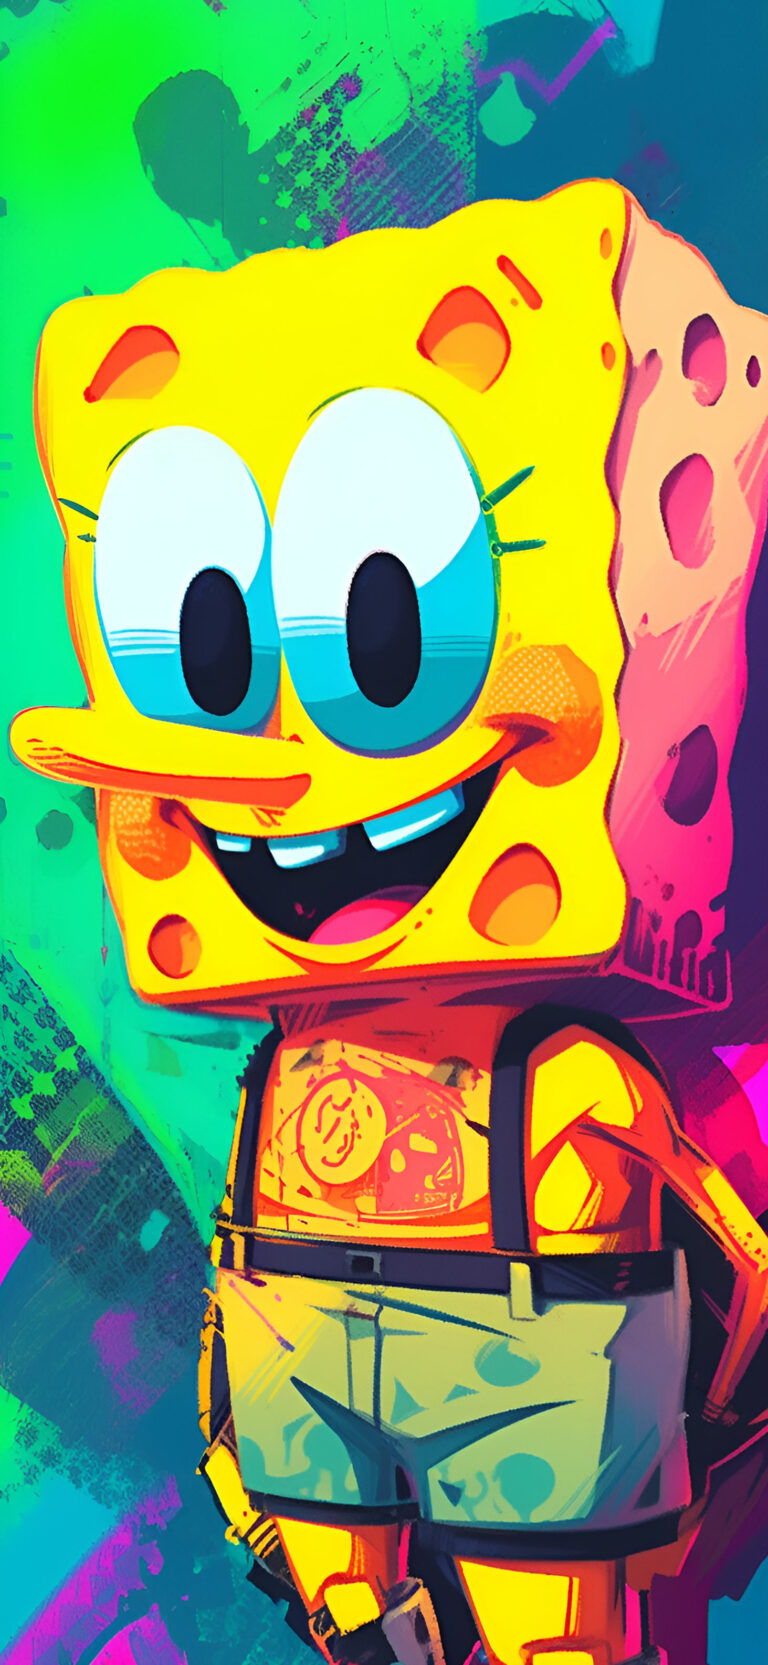 Trippy SpongeBob Art Wallpapers - Cartoon Wallpapers for iPhone